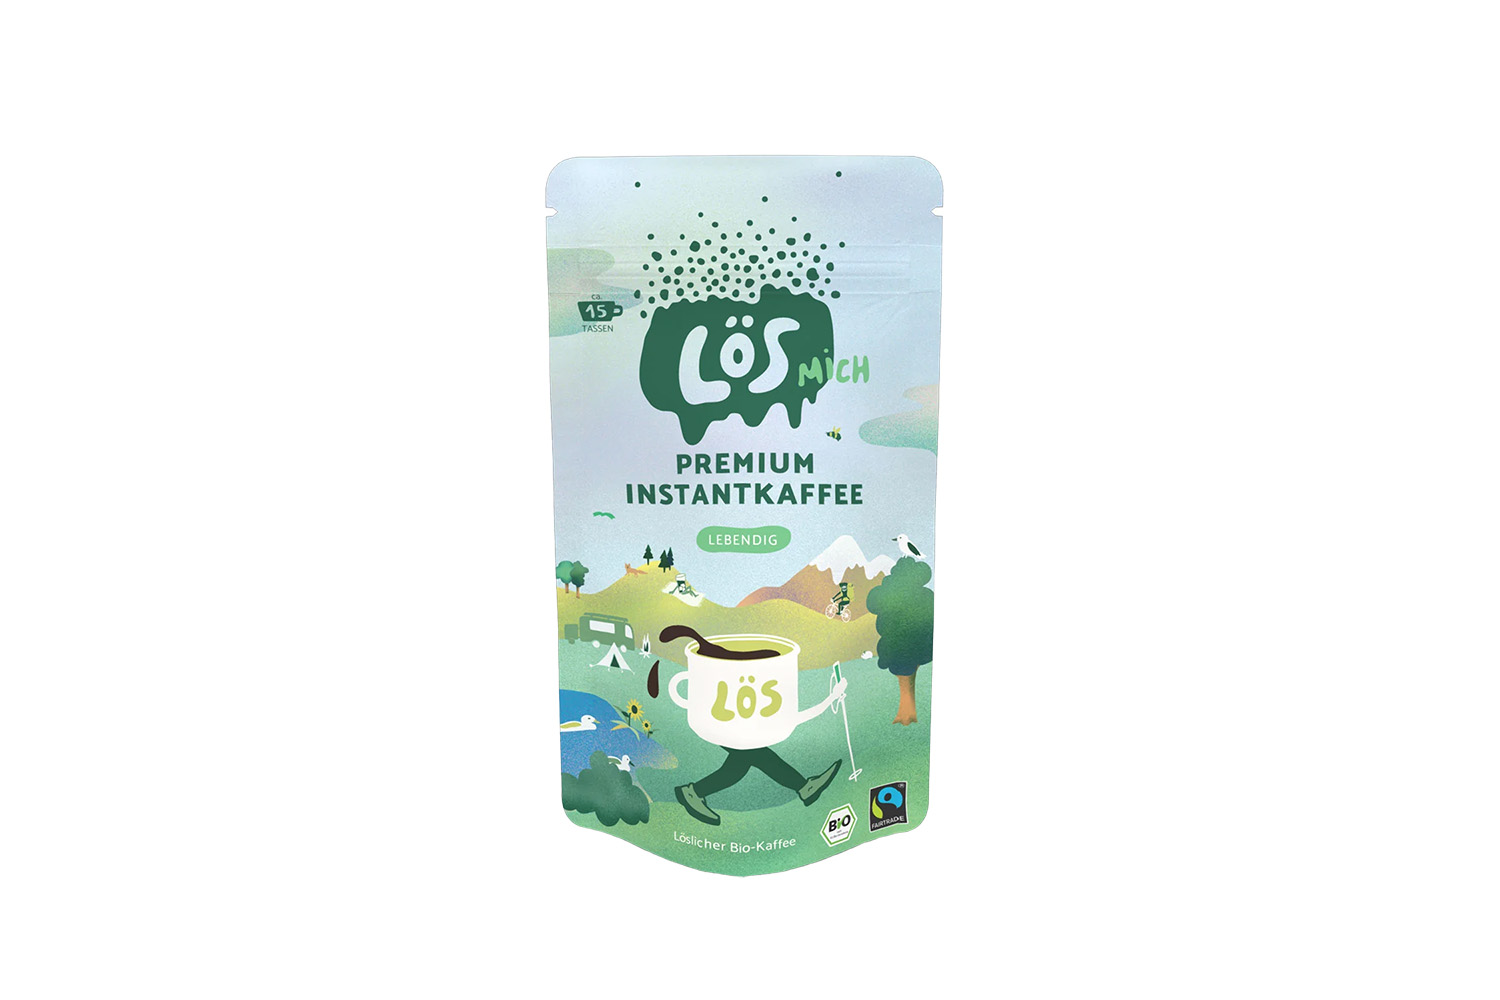 Lösmich Premium Bio-Instantkaffee 42g